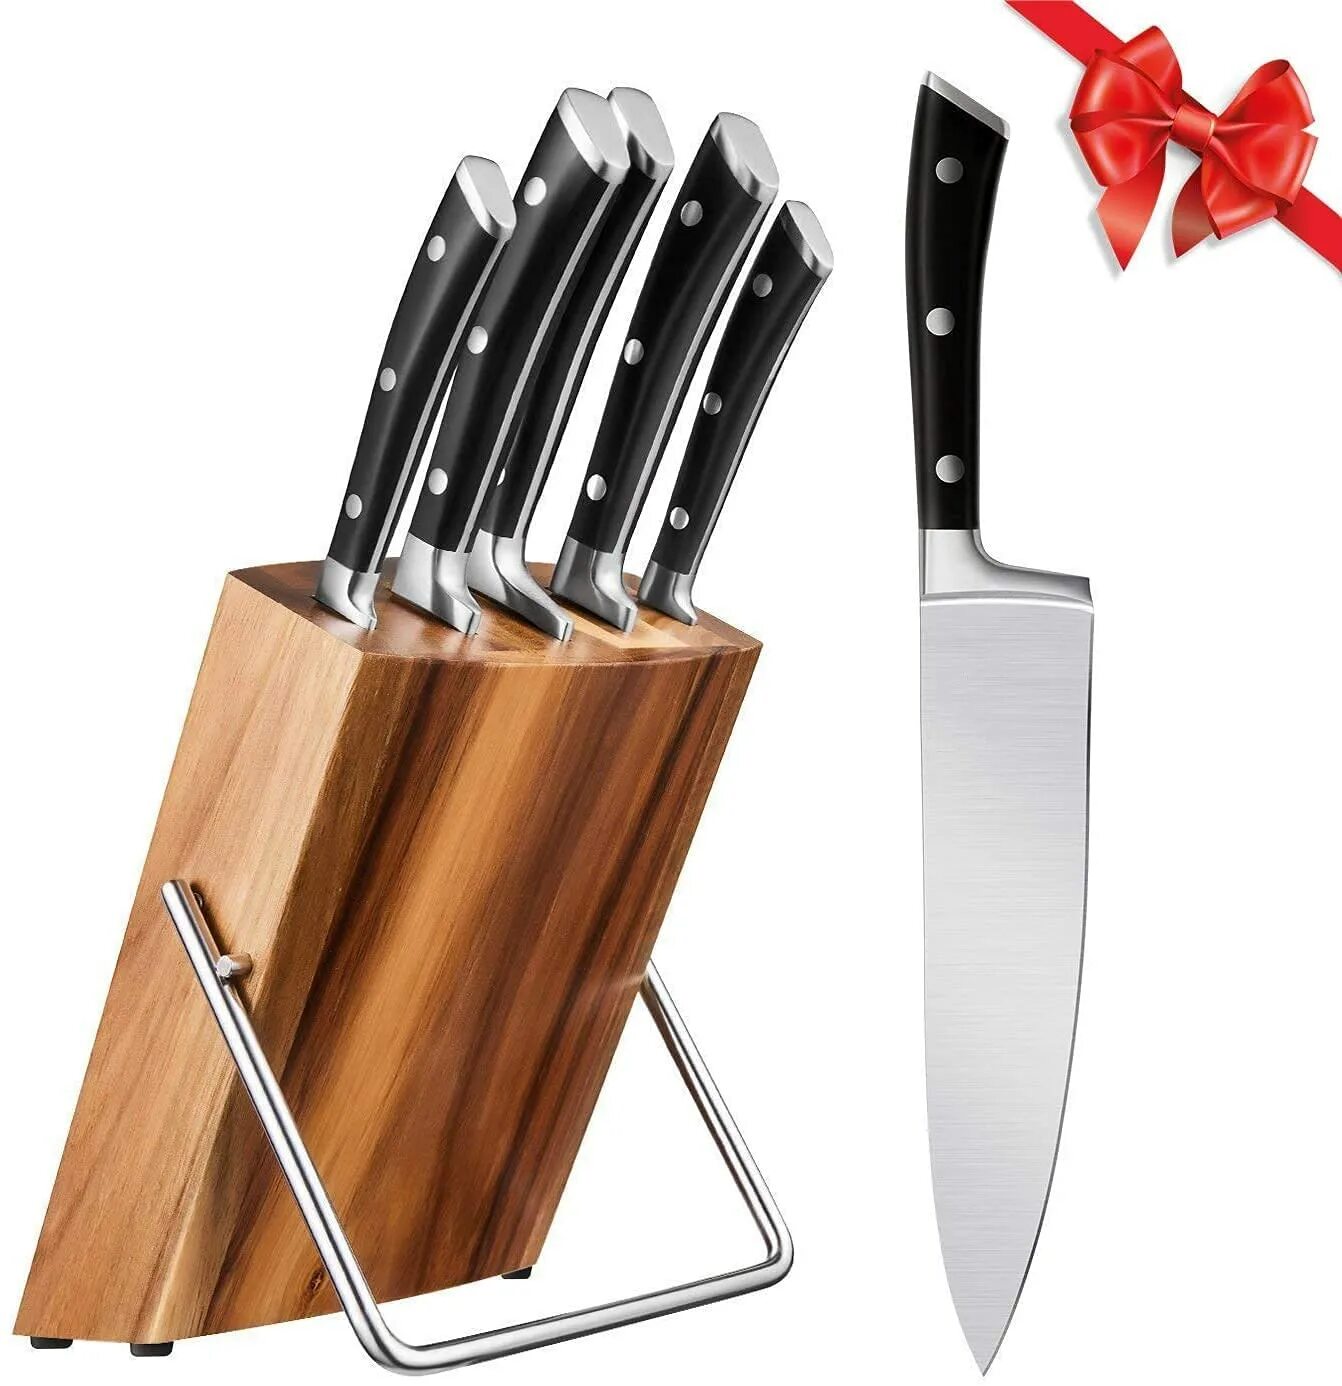 Набор ножей Книфе сет. Cutlery Stainless Steel кухонный нож. Ножи Kitchen Knife Stainless Steel. Набор ножей Kitchen Knife 5p. Купить нержавеющий нож